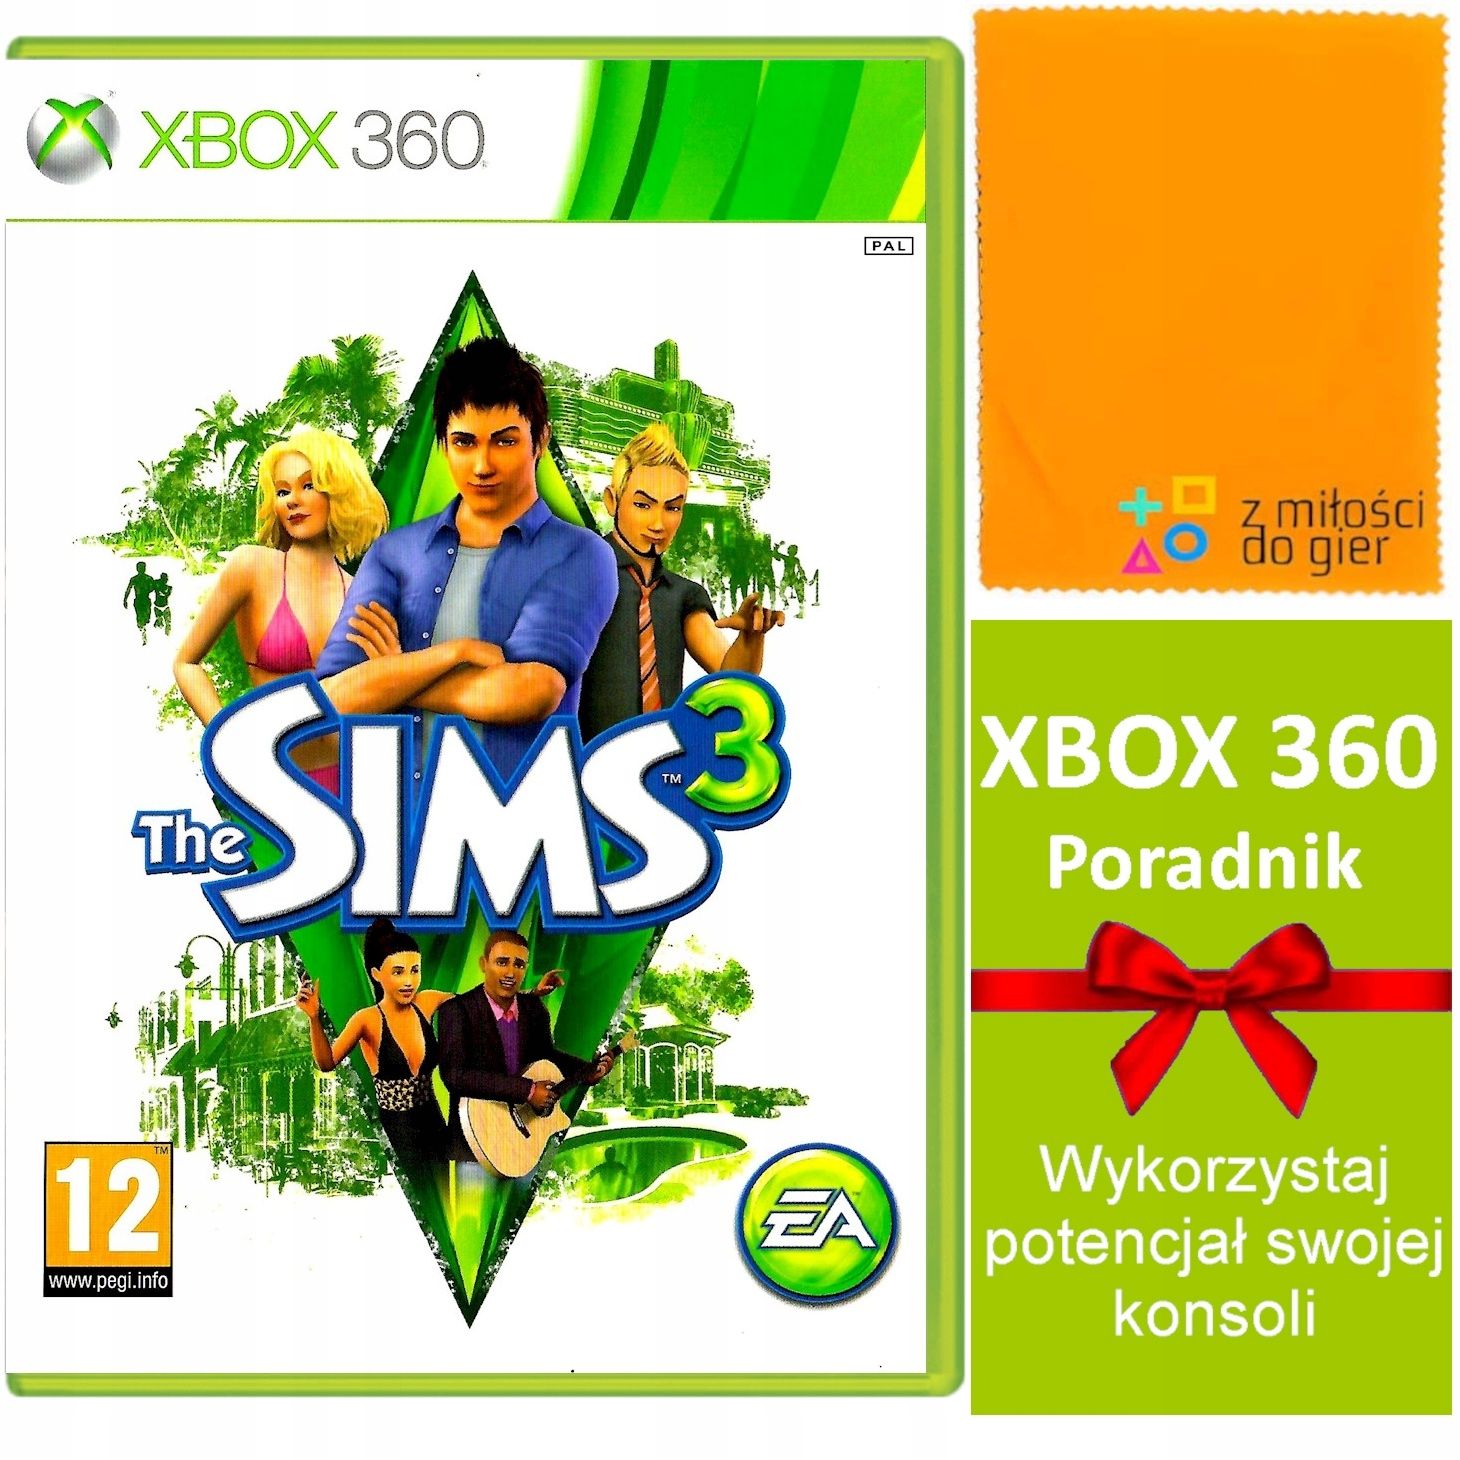 gra na Xbox 360 The Sims 3 Simsy Iii jakie Życie zgotujesz swojemu Sim